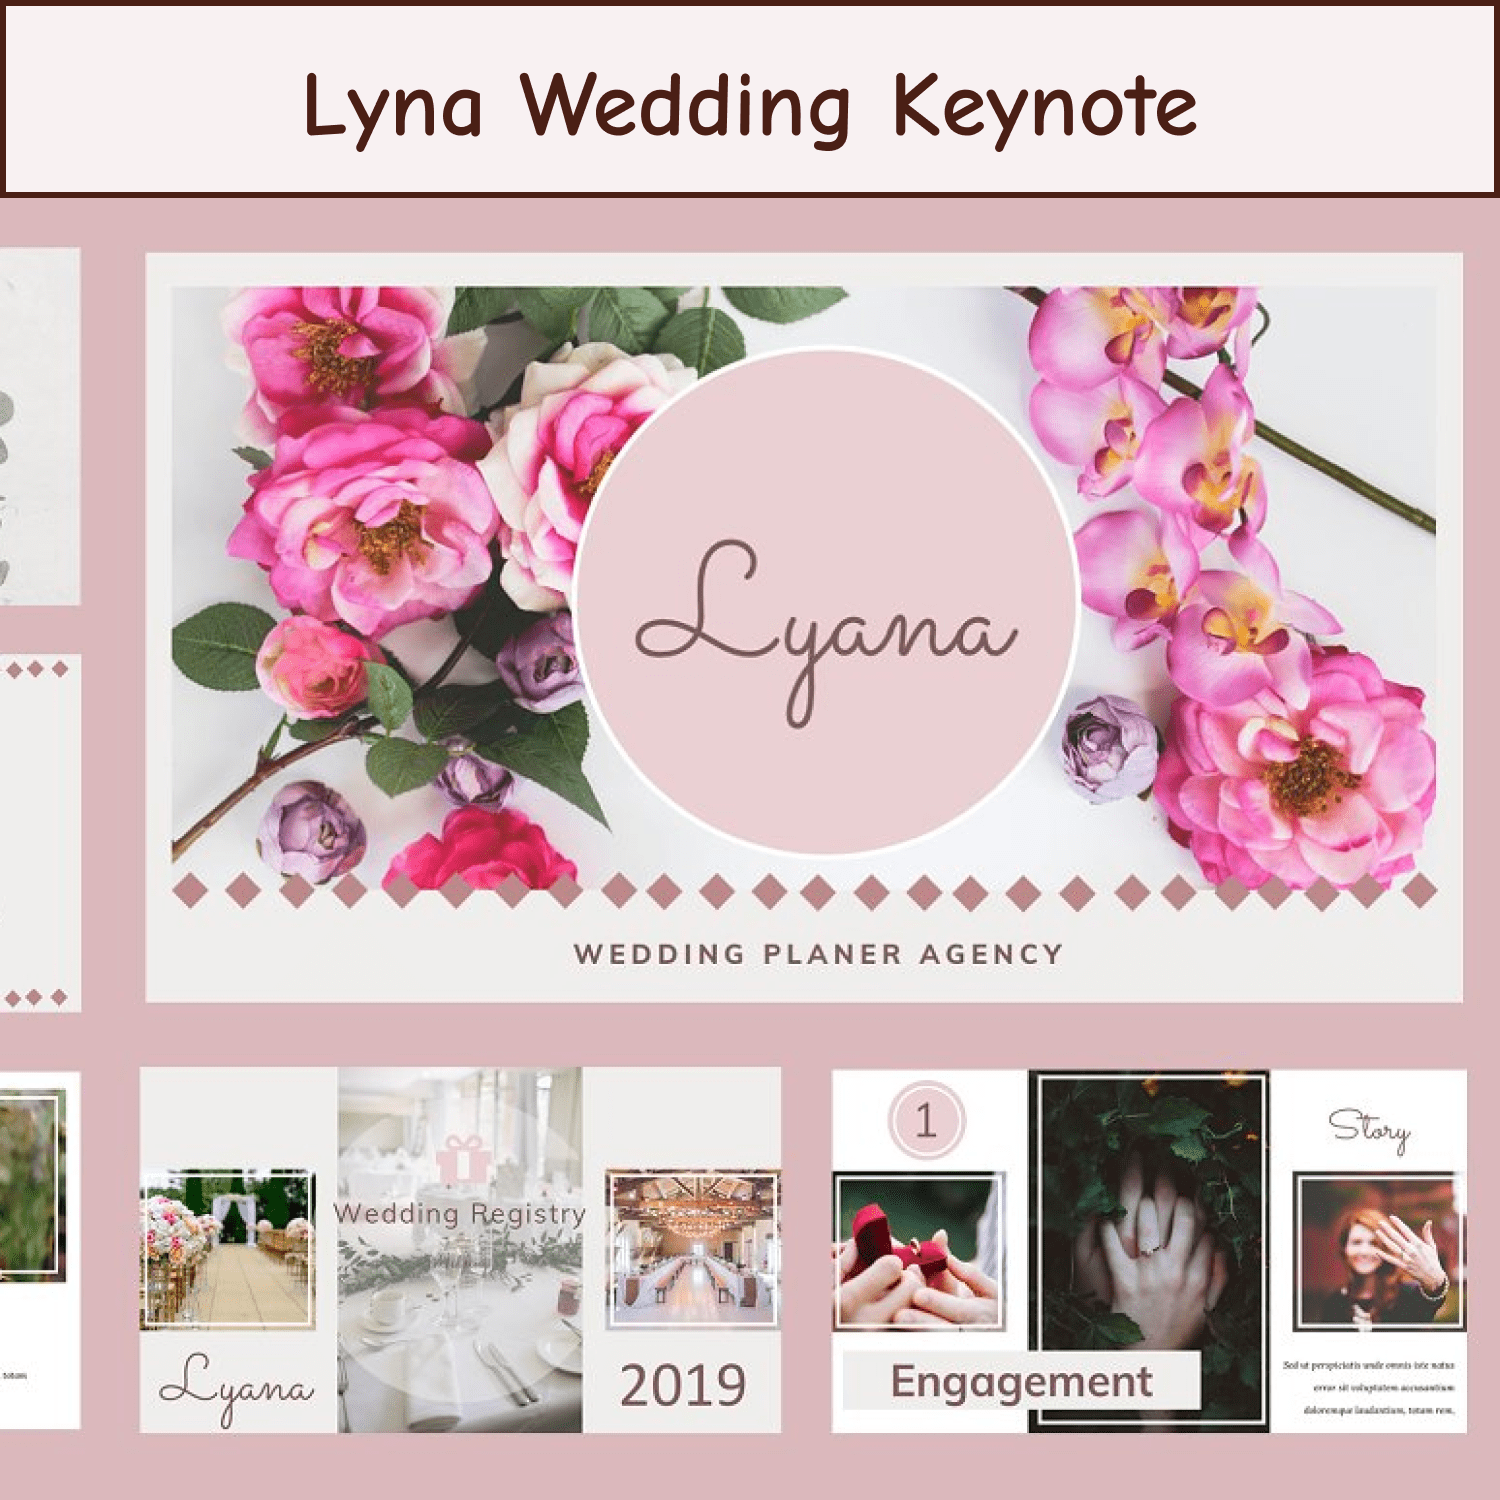 Lyna Wedding Keynote cover.